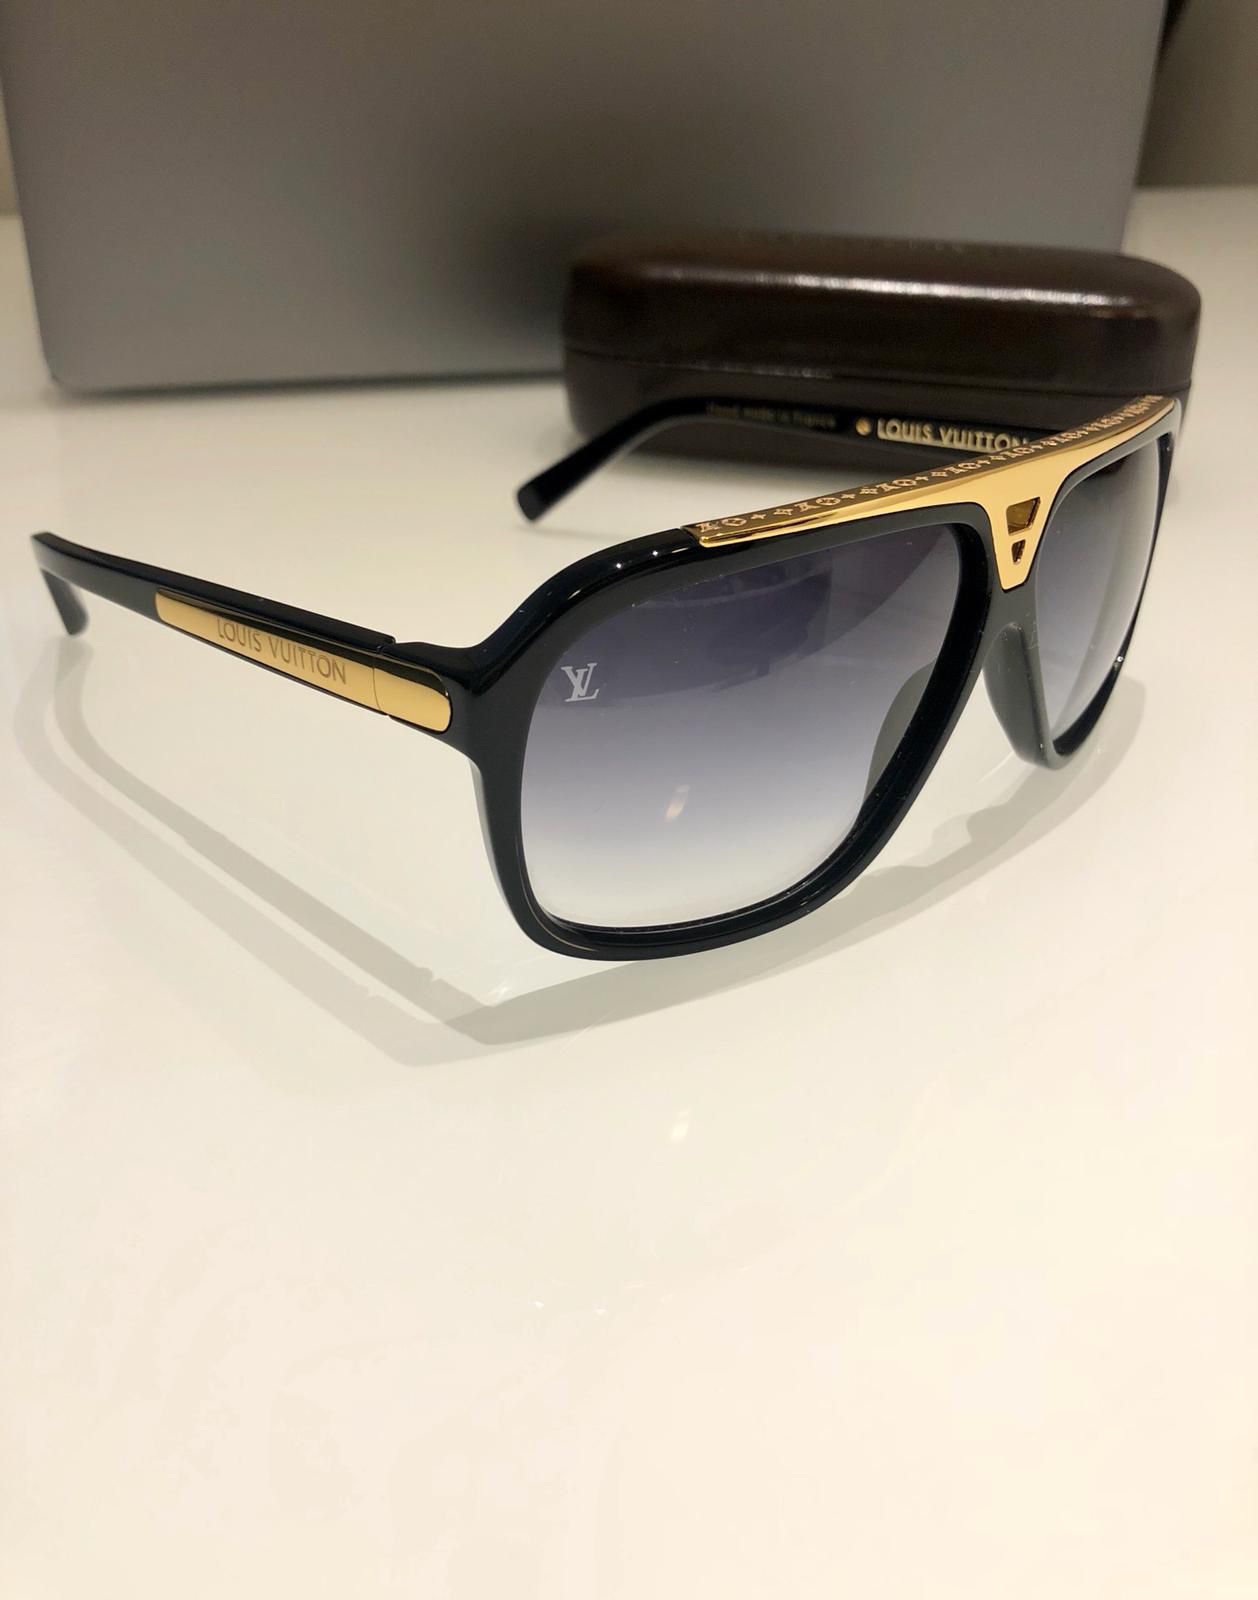 LV Glasses for Sale in Miami, FL - OfferUp